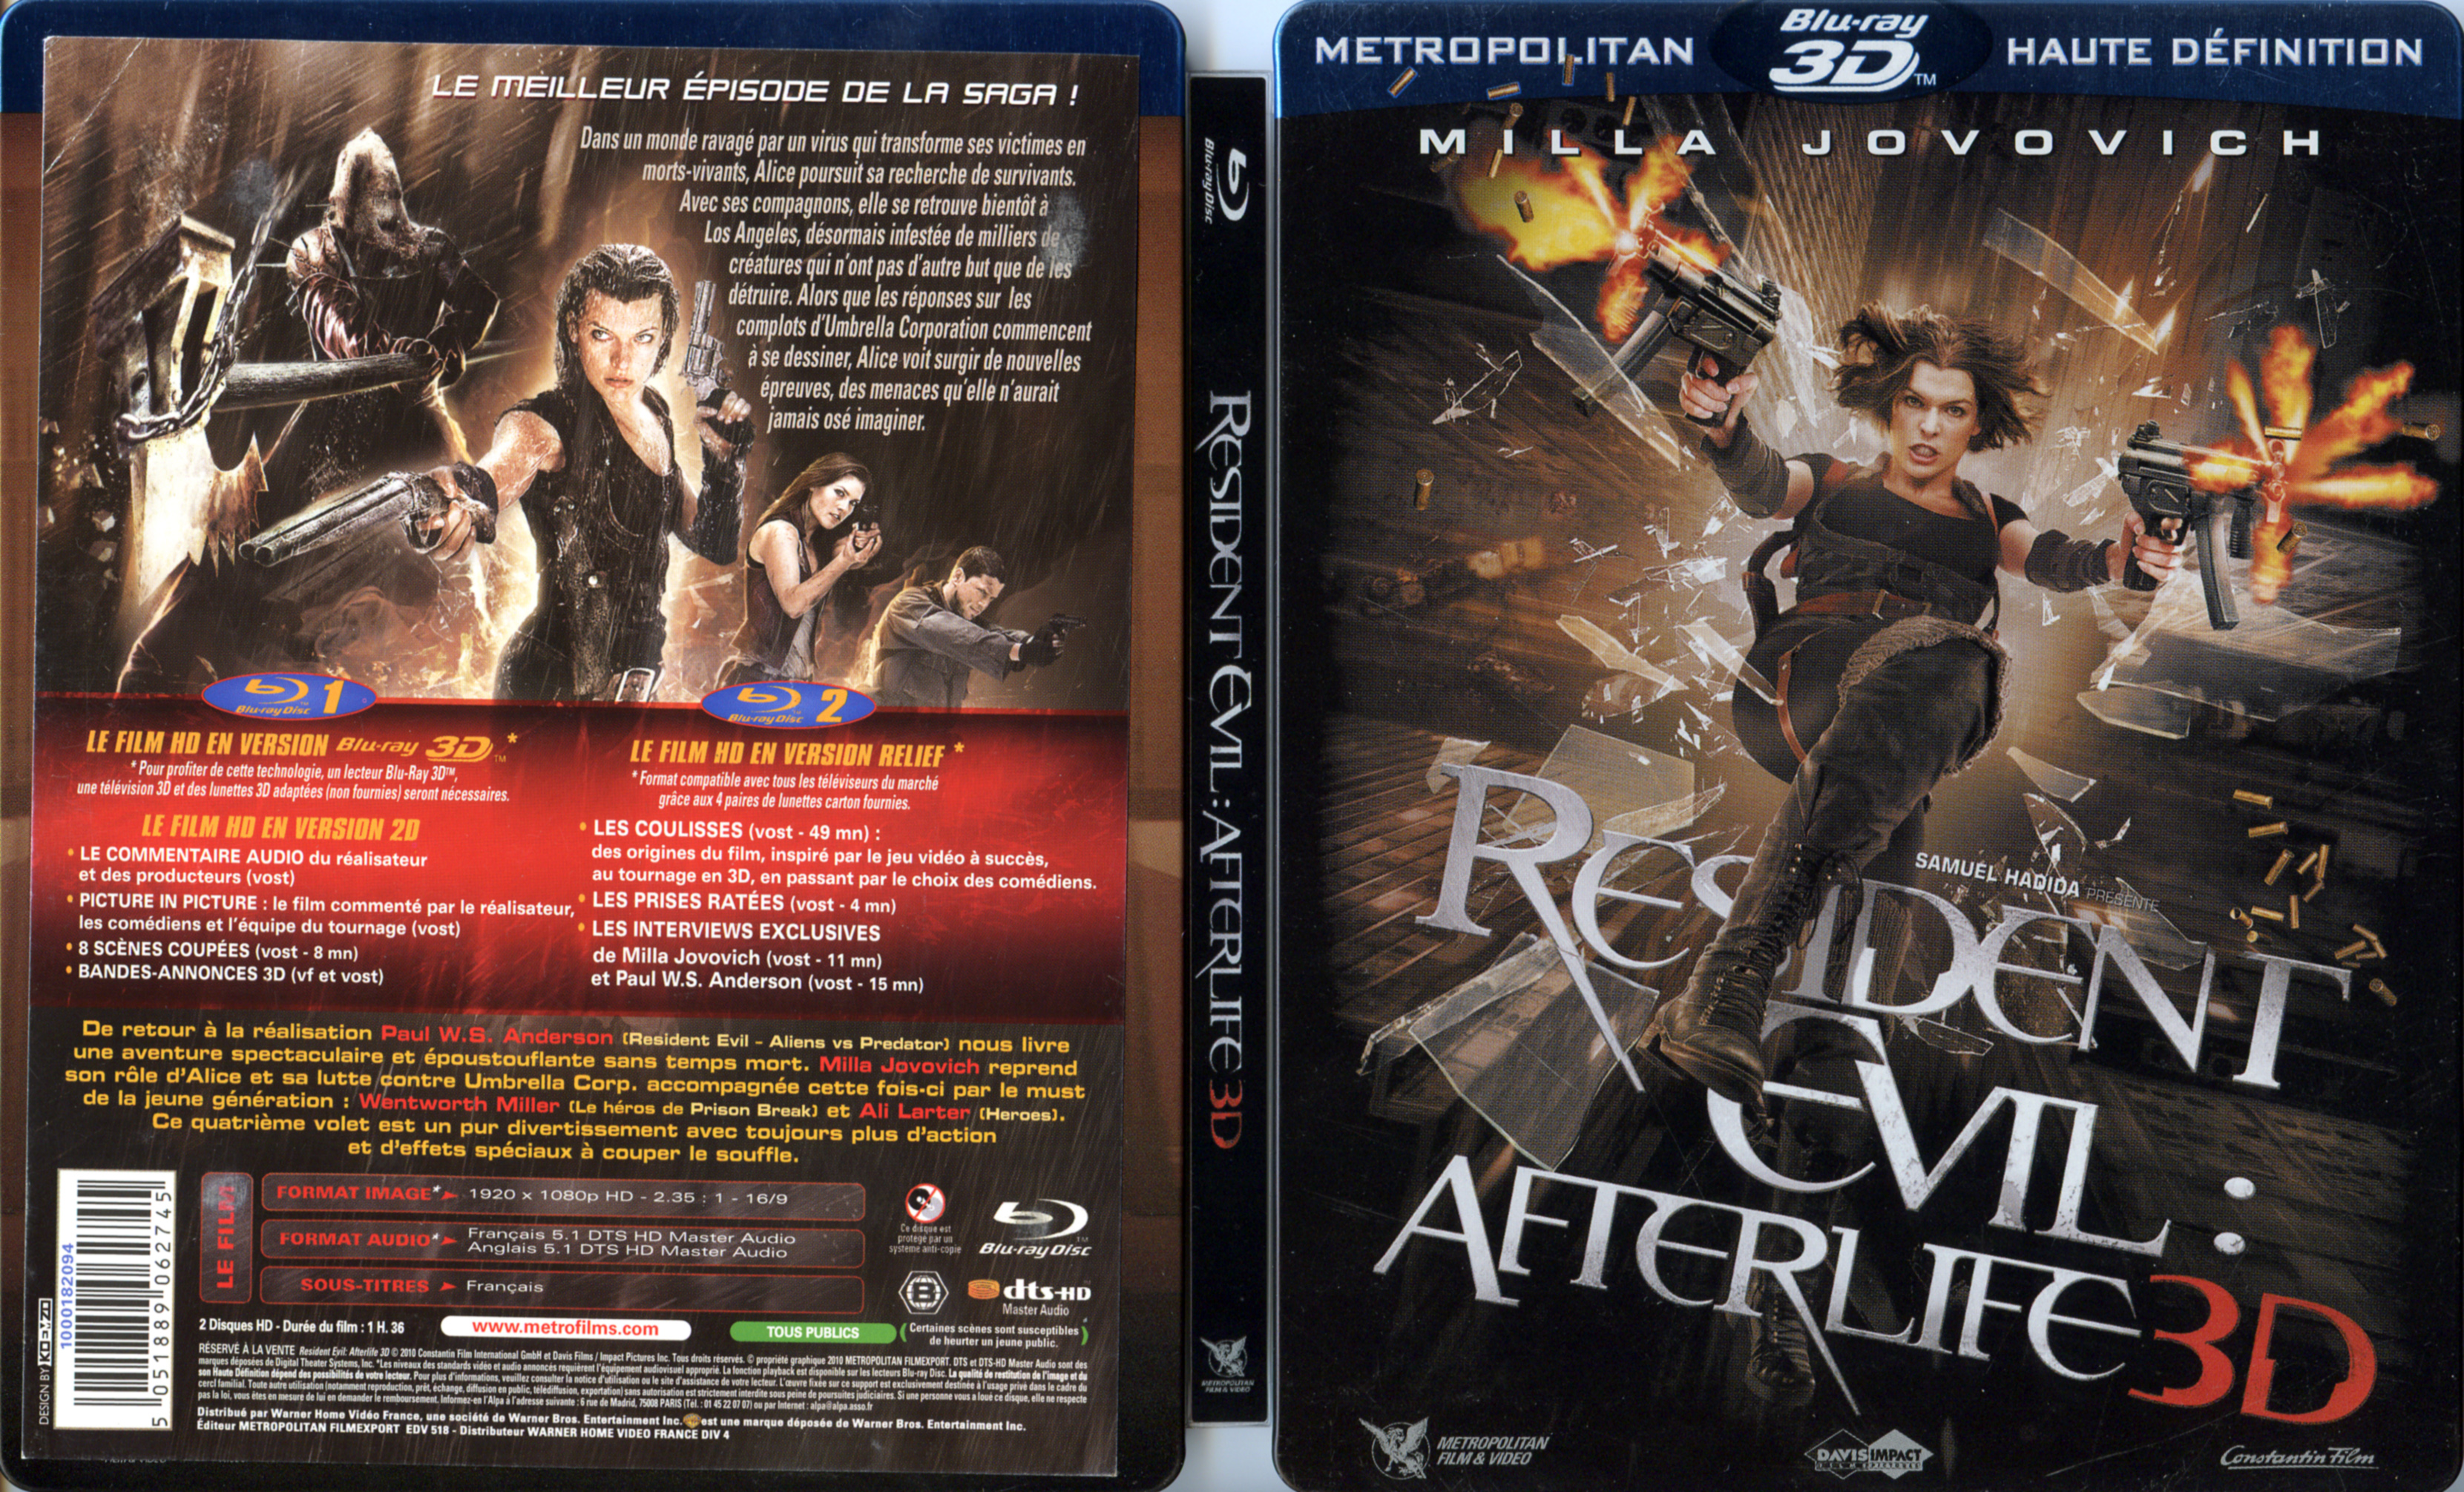 Jaquette DVD Resident Evil Afterlife 3D (BLU-RAY) v2